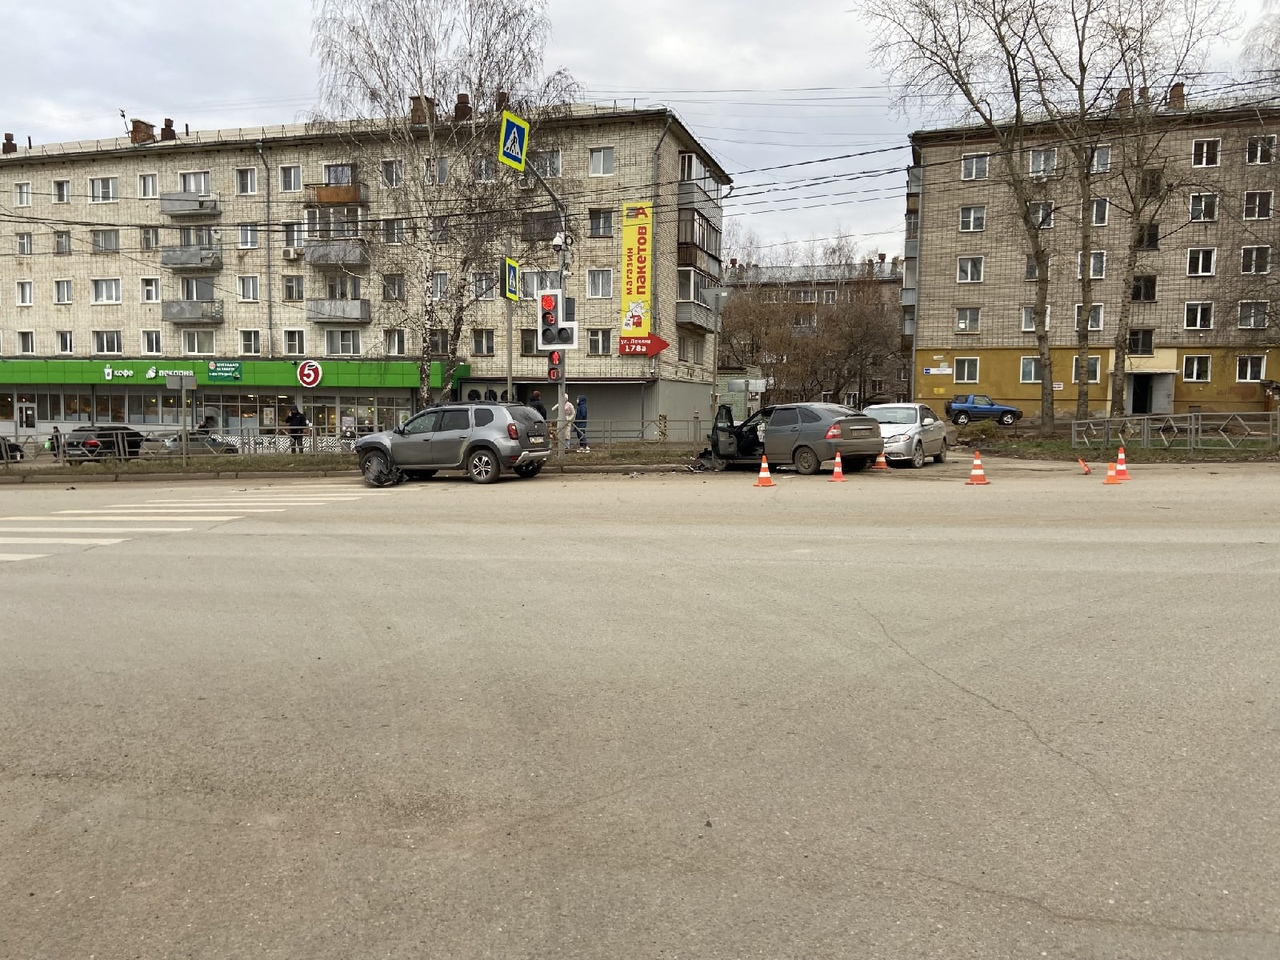 Что обсуждают в Кирове: подробности падения женщины из окна и массовое ДТП